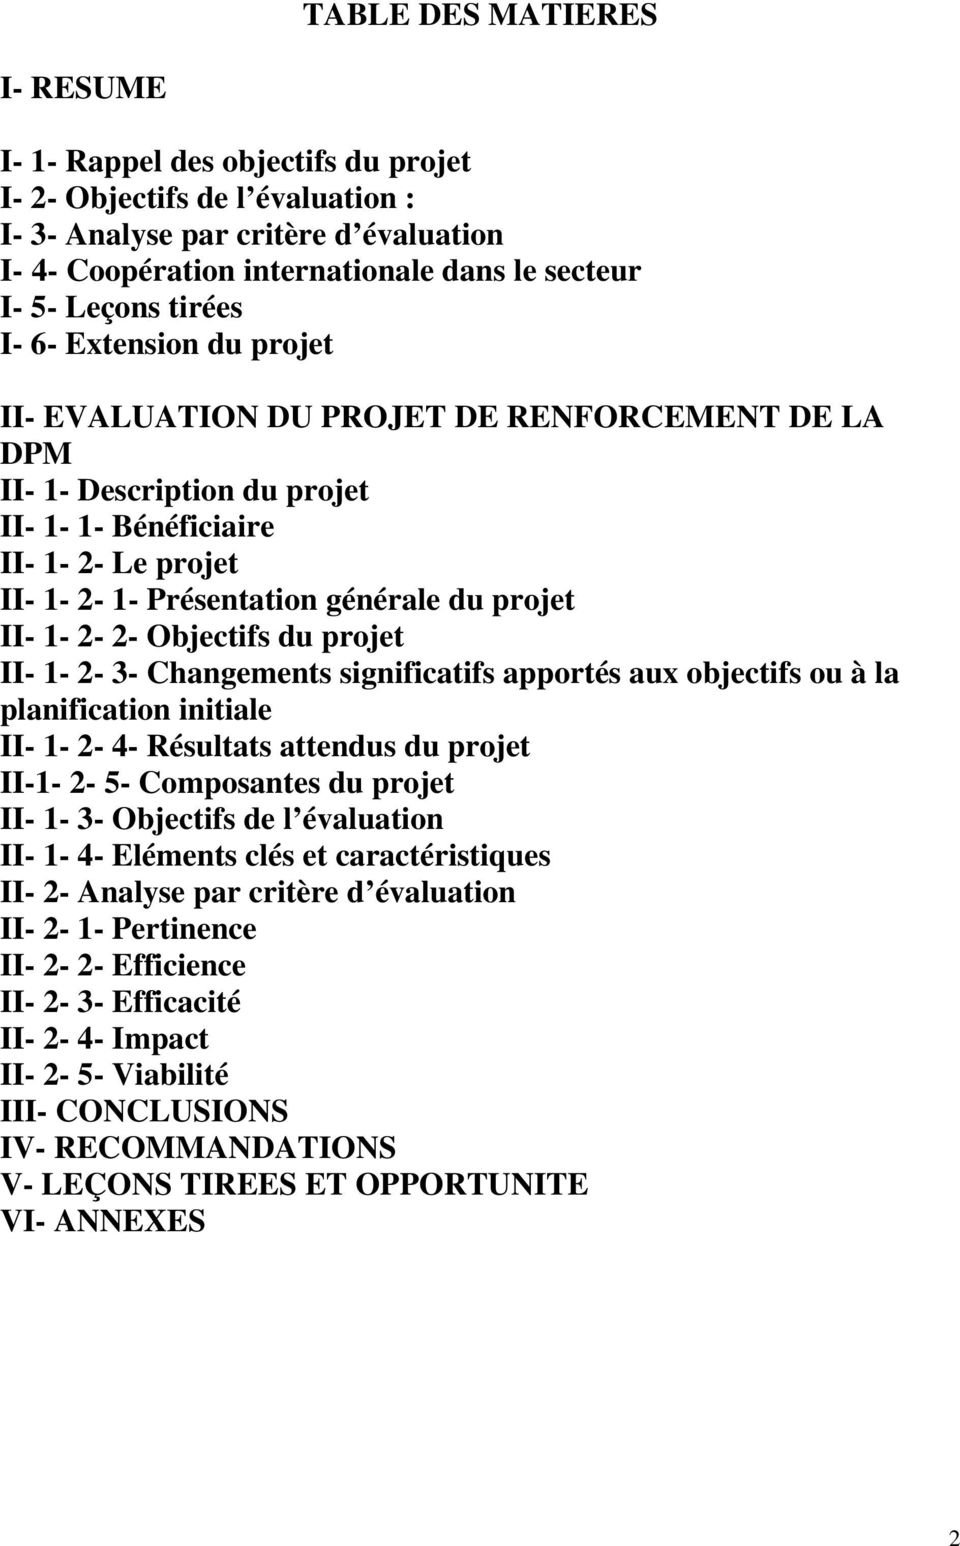 projet II- 1-2- 2- Objectifs du projet II- 1-2- 3- Changements significatifs apportés aux objectifs ou à la planification initiale II- 1-2- 4- Résultats attendus du projet II-1-2- 5- Composantes du